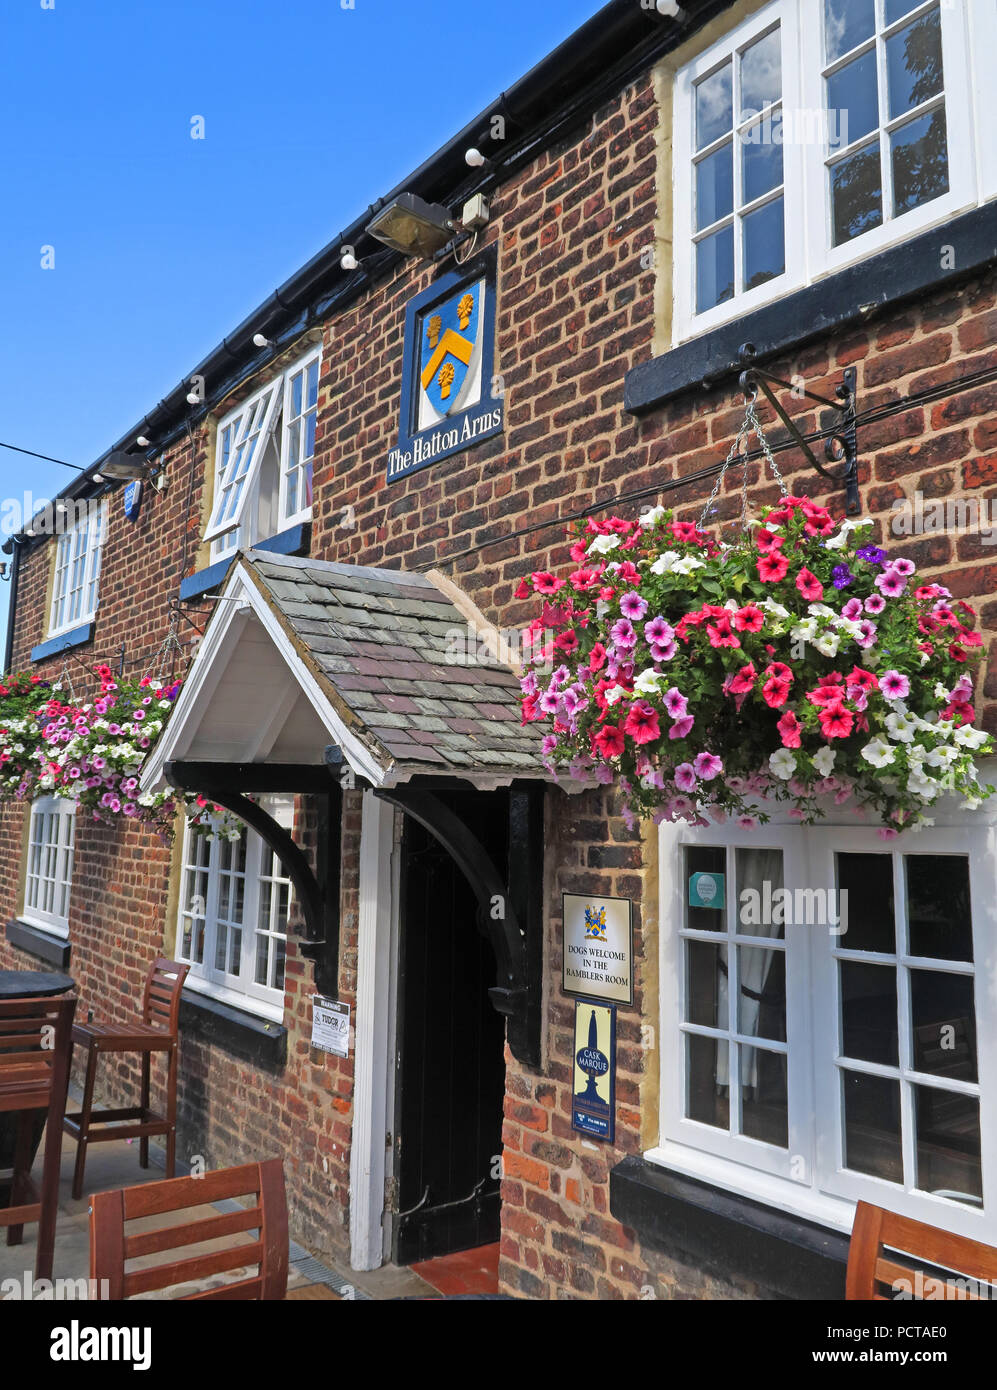 L'Hatton Arms pub bar classé grade II, Hatton Village, près de Warrington, Cheshire, North West England, UK Banque D'Images